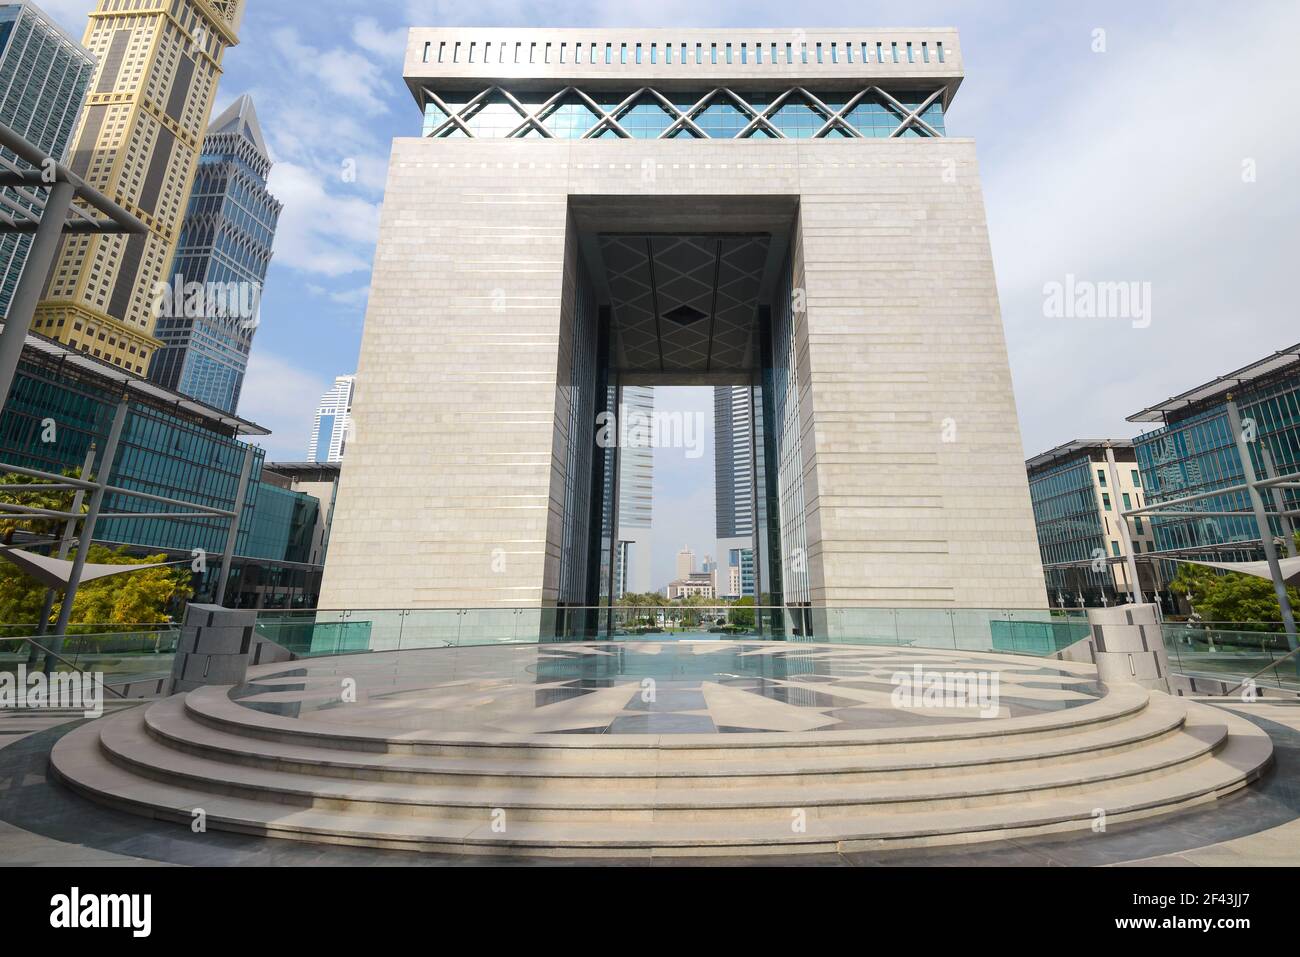 Das Gate-Gebäude am Dubai International Financial Centre in Dubai, Vereinigte Arabische Emirate. Torgebäude des DIFC an der Finanzdistriktallee. Stockfoto